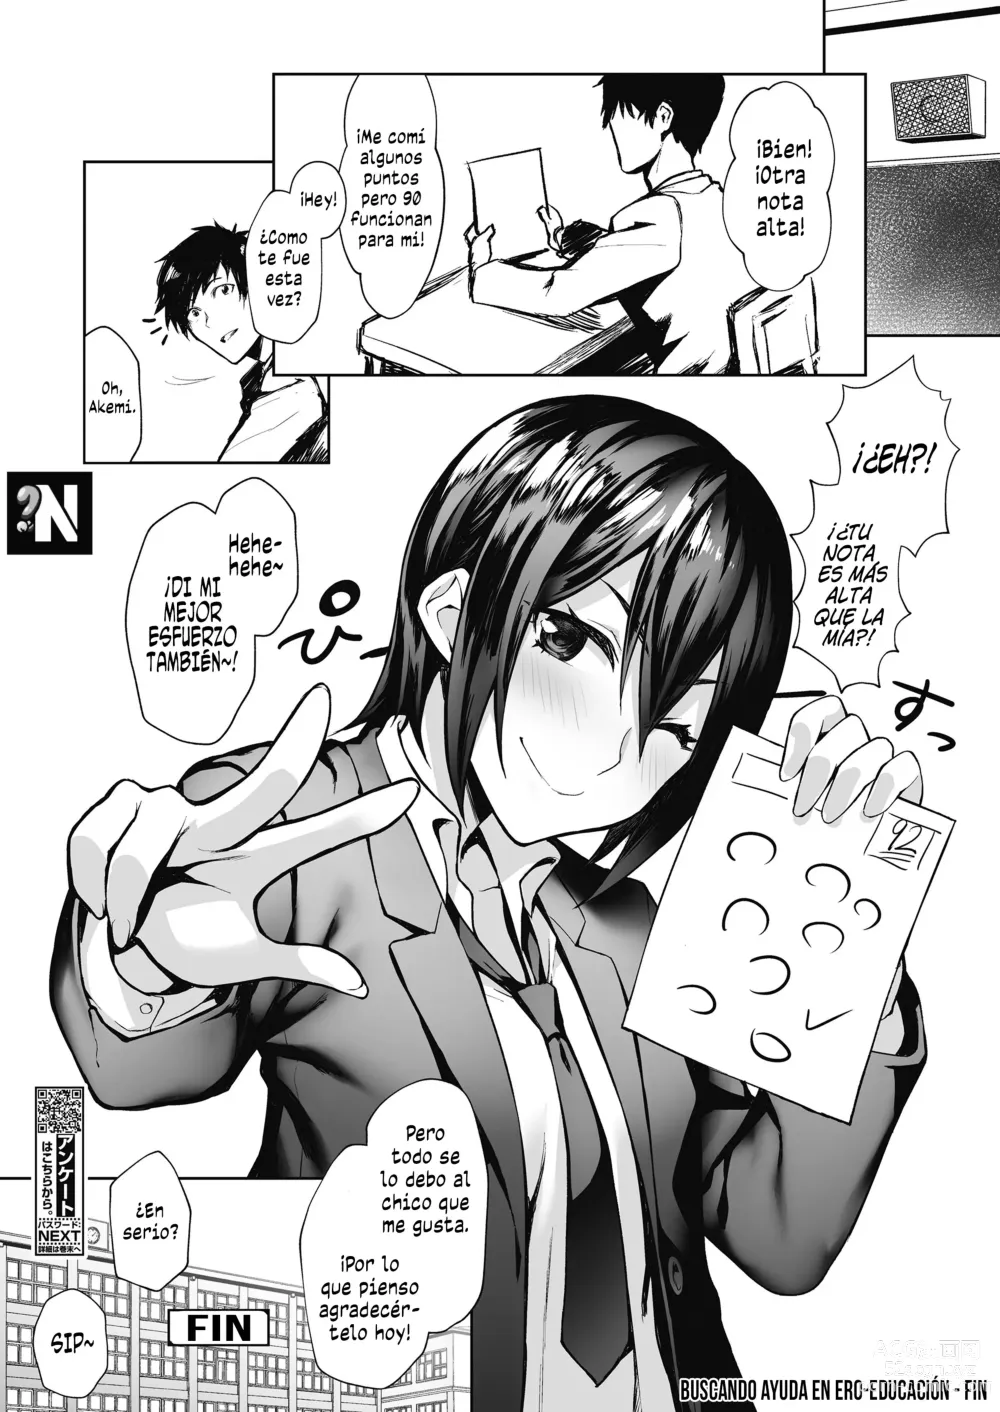 Page 24 of manga Buscando Ayuda en Ero-Educación